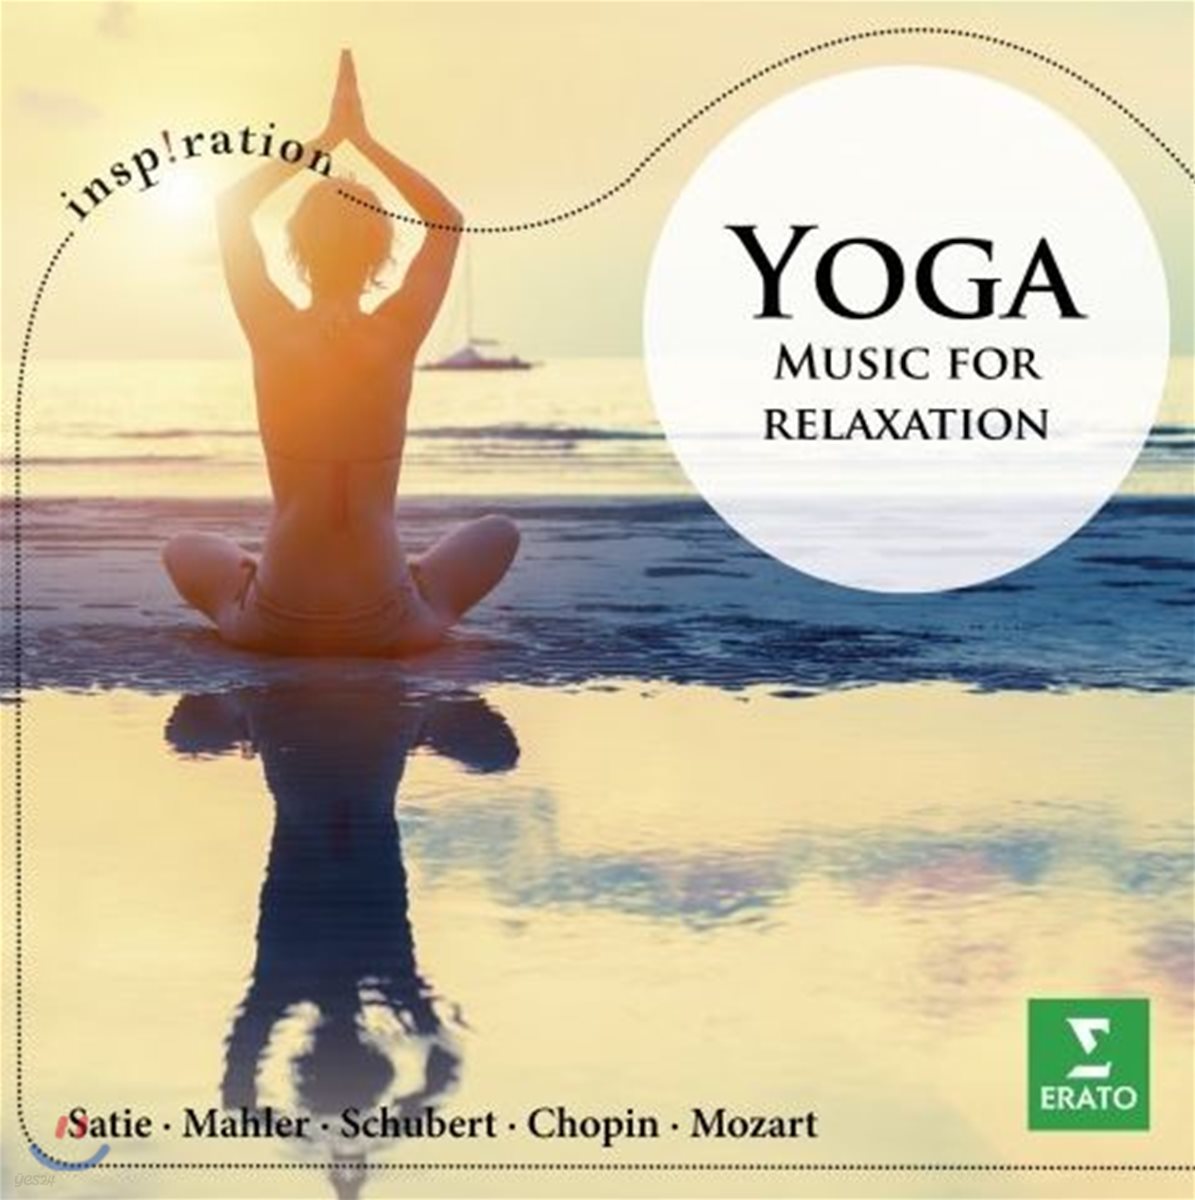 요가 - 휴식을 위한 음악 (Yoga - Music for relexation)